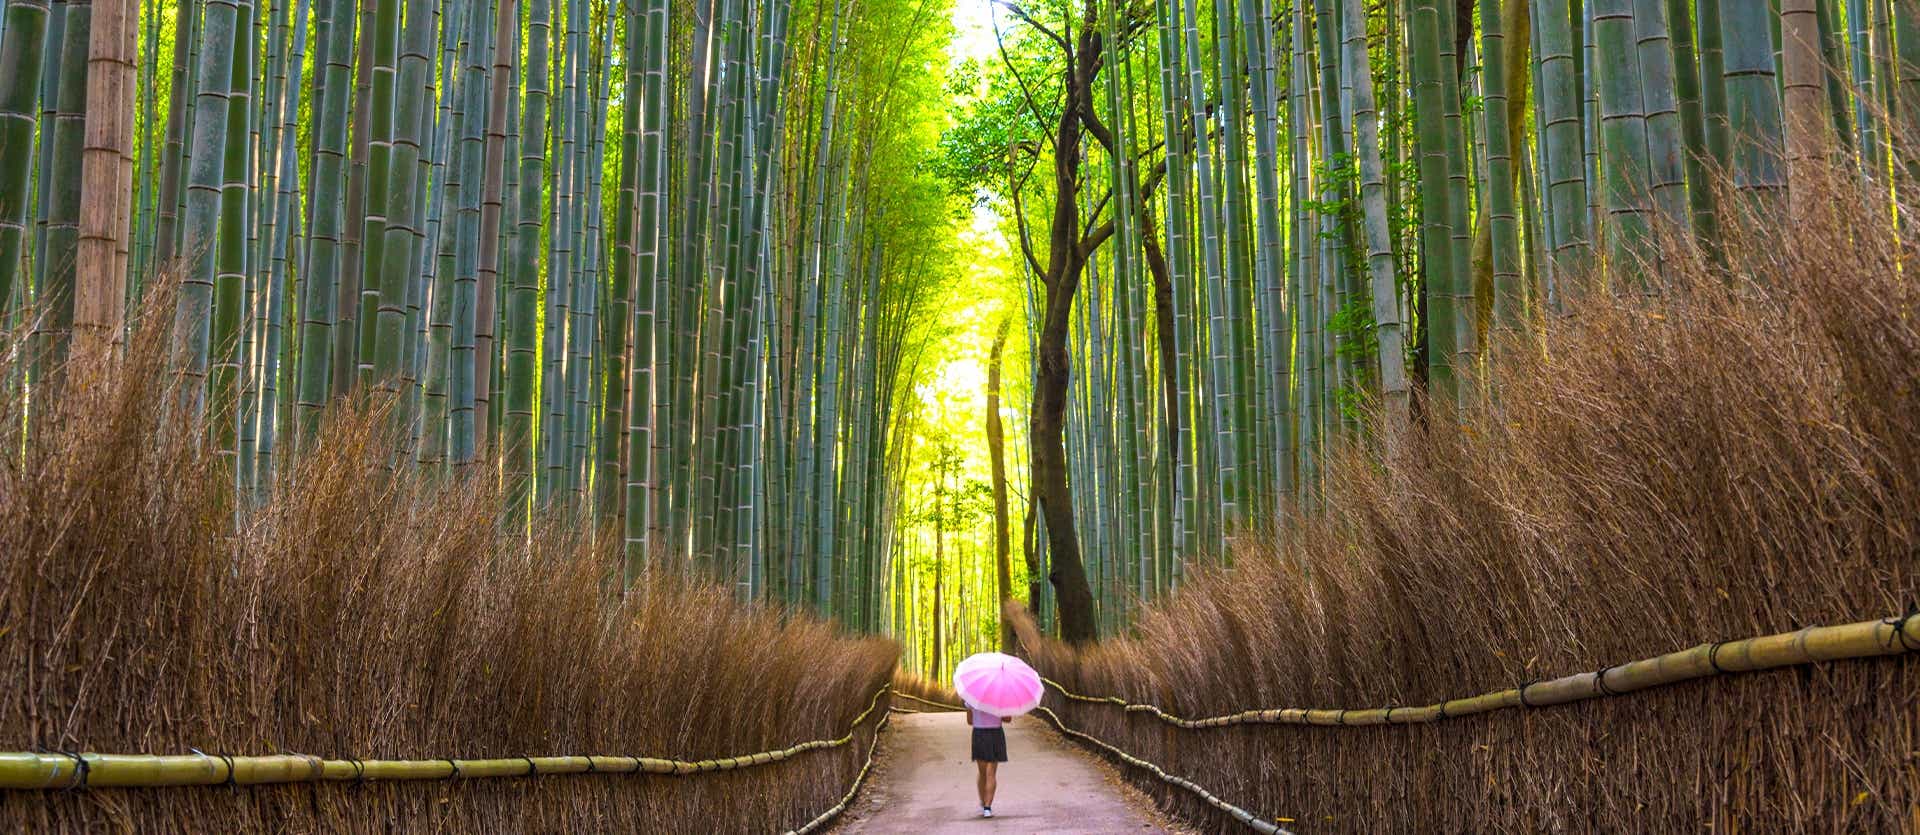 Bosque de bambú <span class="iconos separador"></span> Kioto